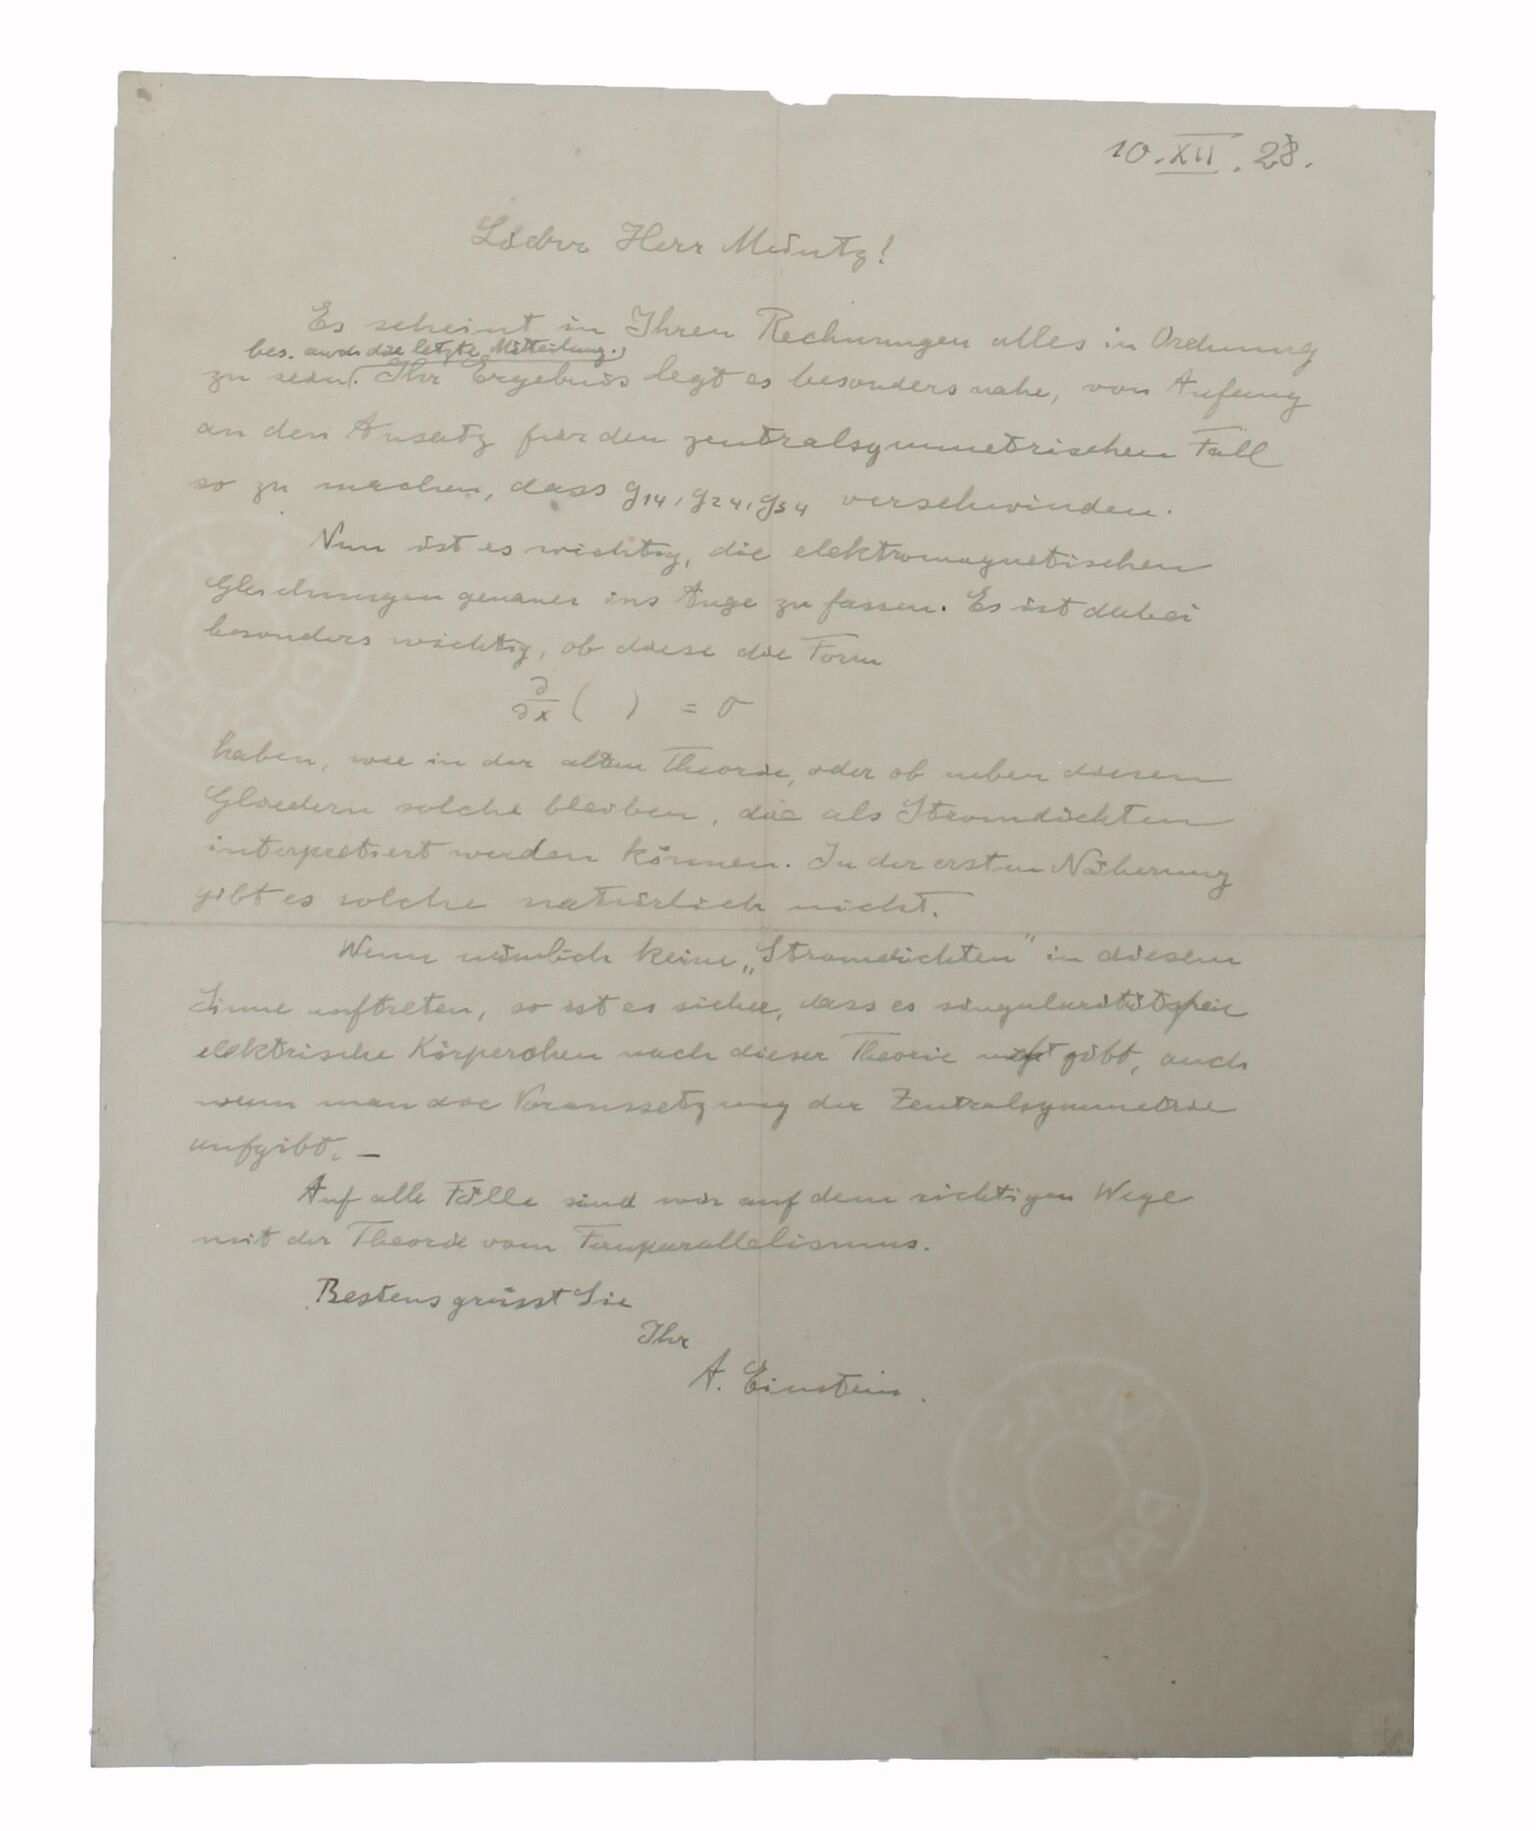 Horthy levele Hitlernek és egy különleges kotta története - könyvritkaságok kiállítása Budapesten